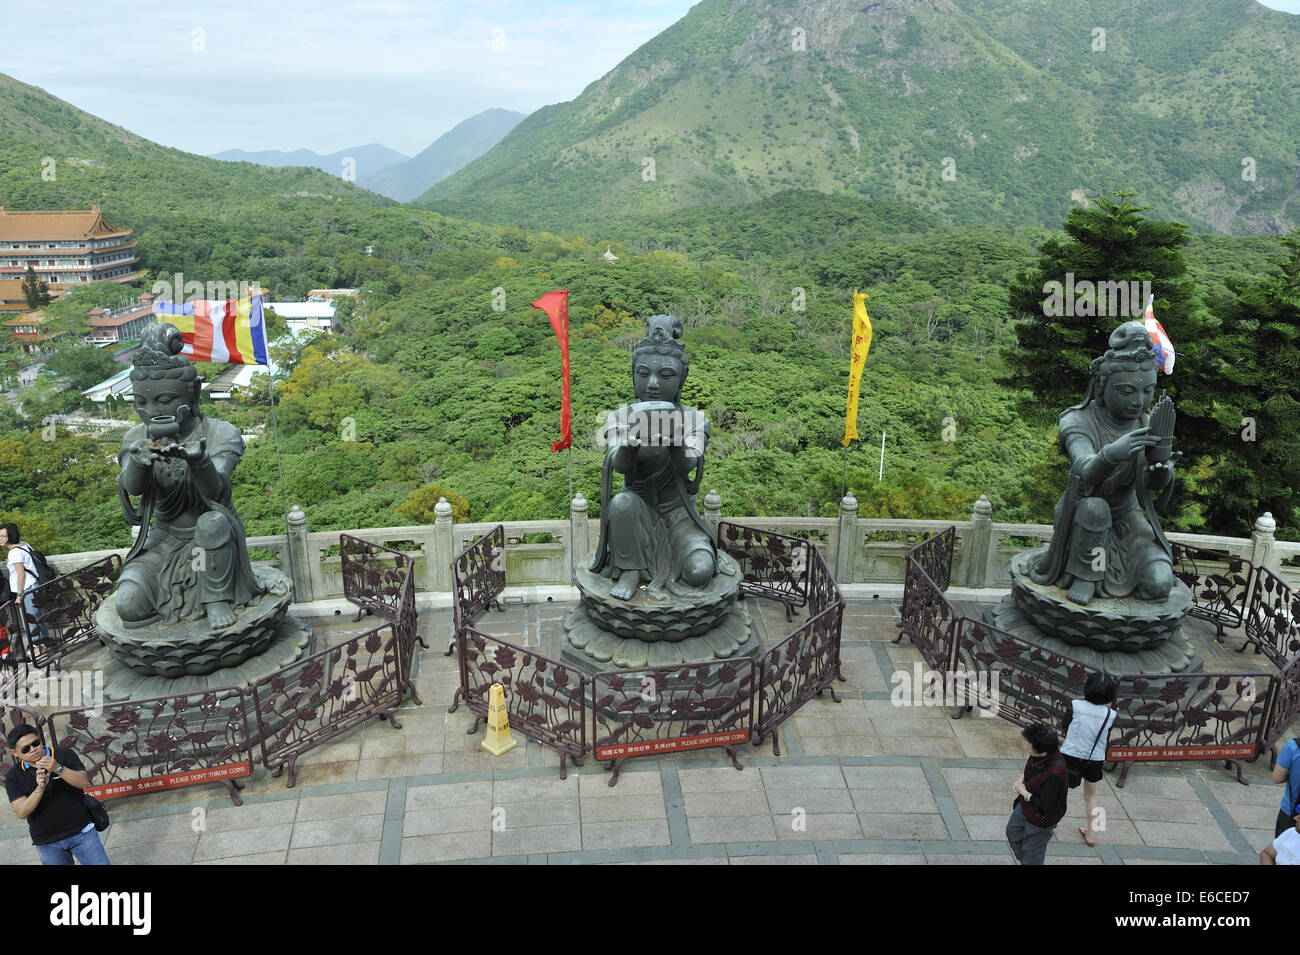 Trois des six Divas connu comme 'l'offre des six Divas' ; les statues de bronze au Tian Tan Buddha, Lantau Island, Hong Kong Banque D'Images